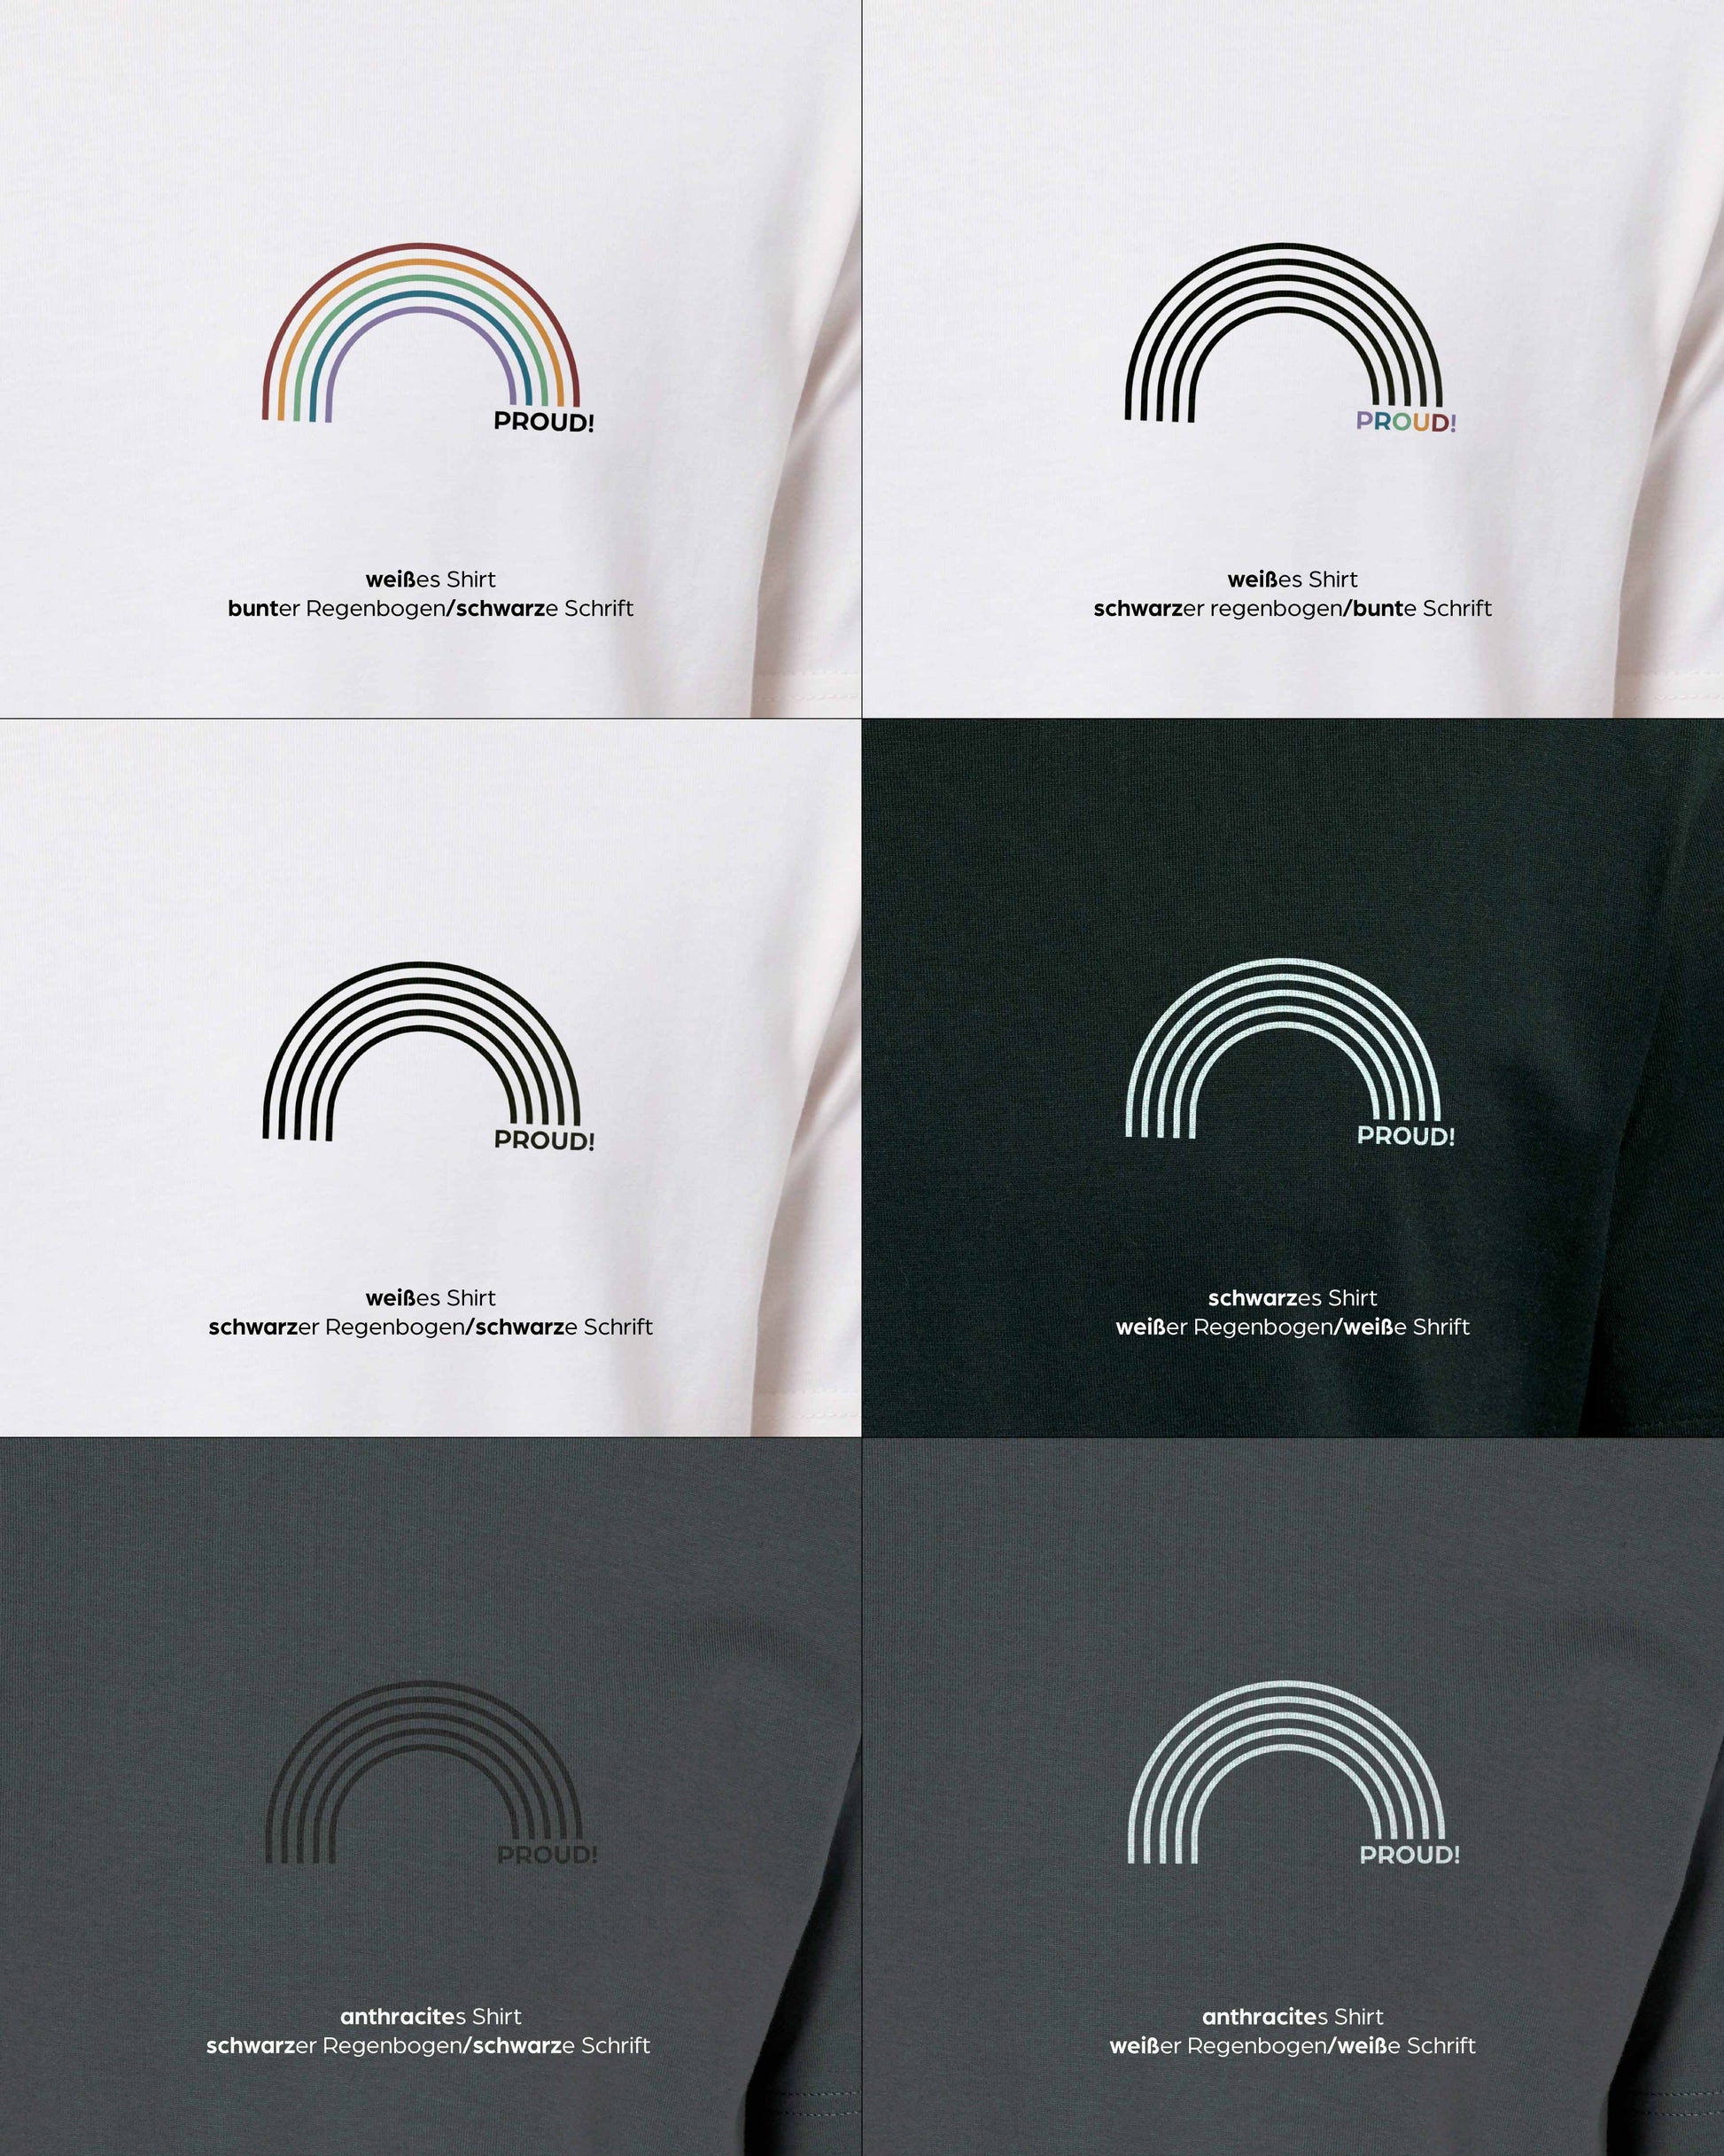 EINHORST® unisex Organic Shirt mit dem Motiv "proud Regenbogen", Bild von allen Farbkombinationen